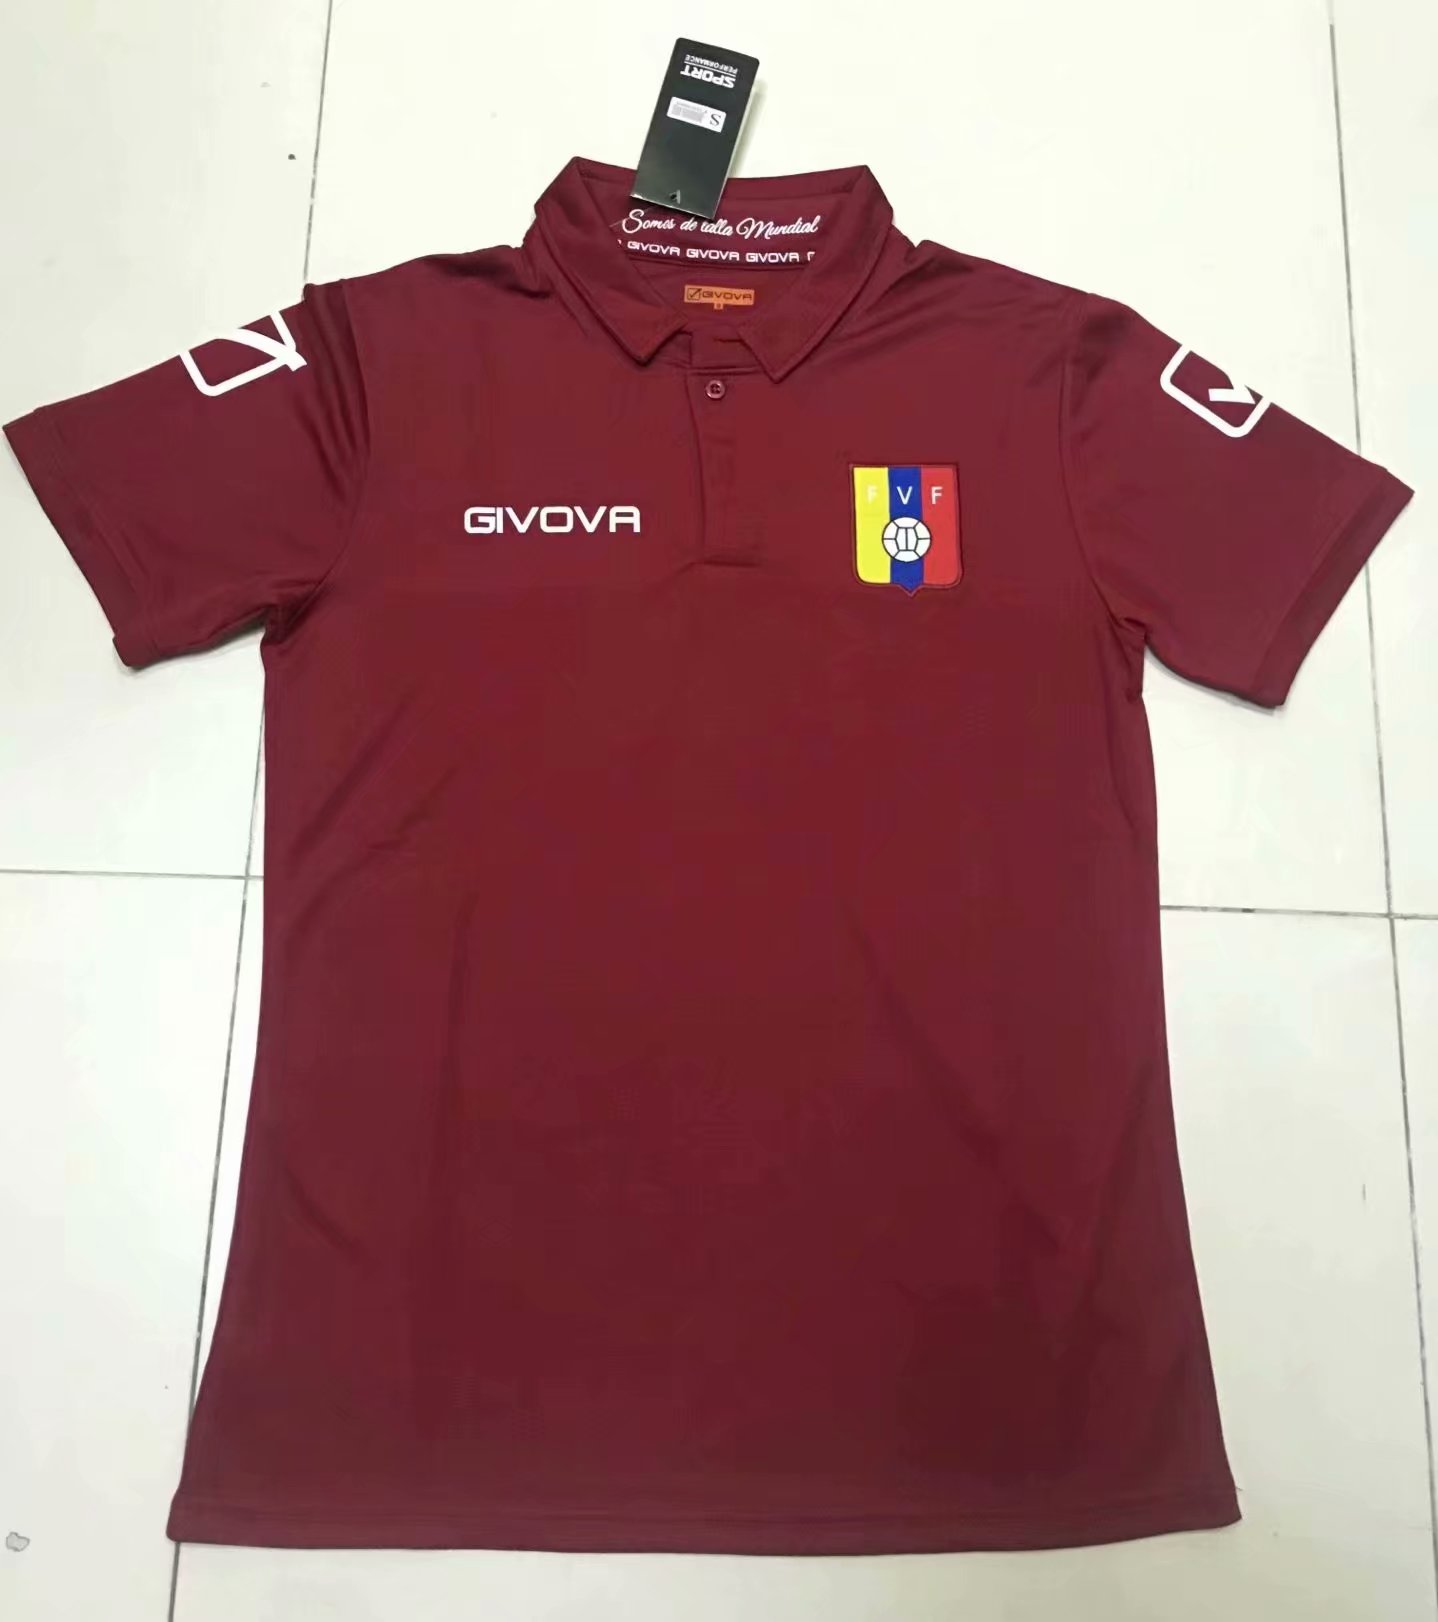 19/20 Men Venezuela Home Soccer Jerseys Football Shirt